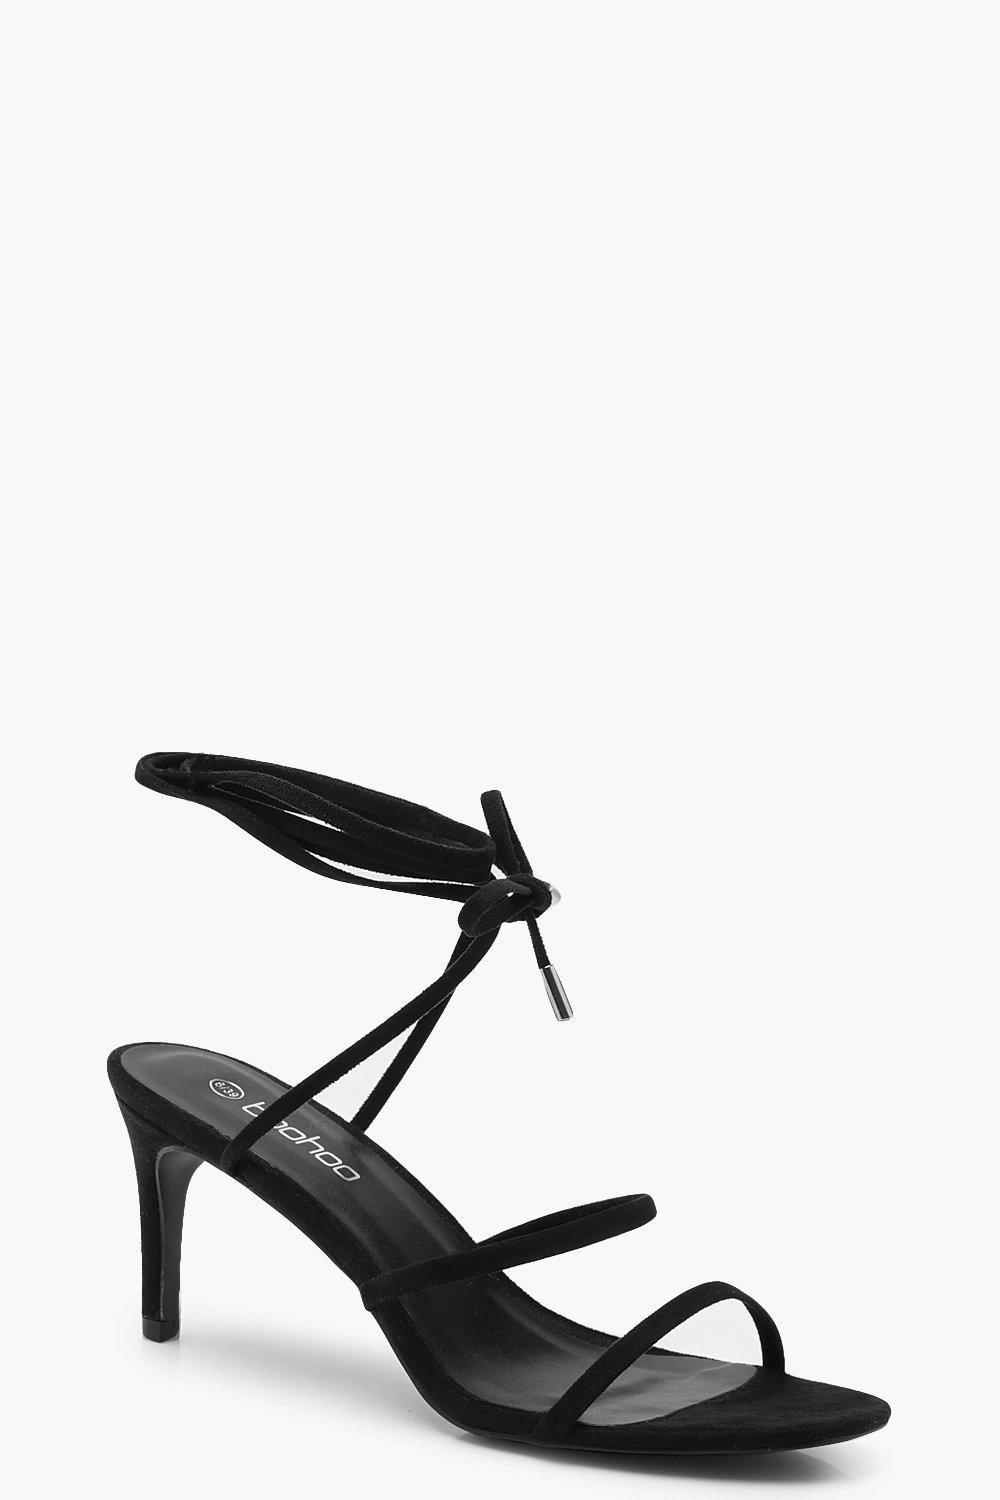 black low heel shoes uk